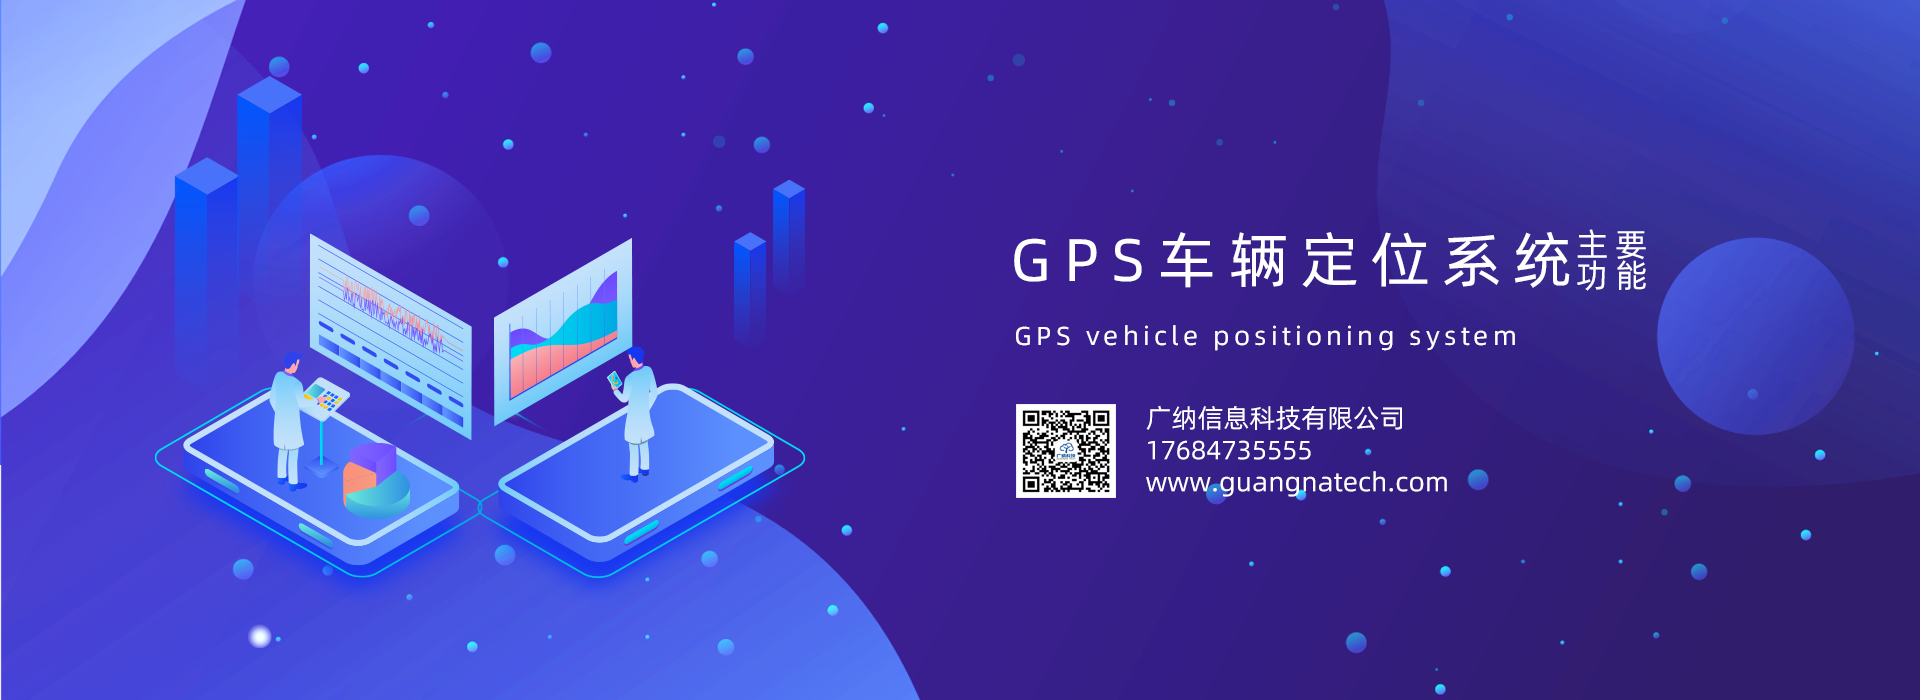 GPS车辆定位系统主要功能图片